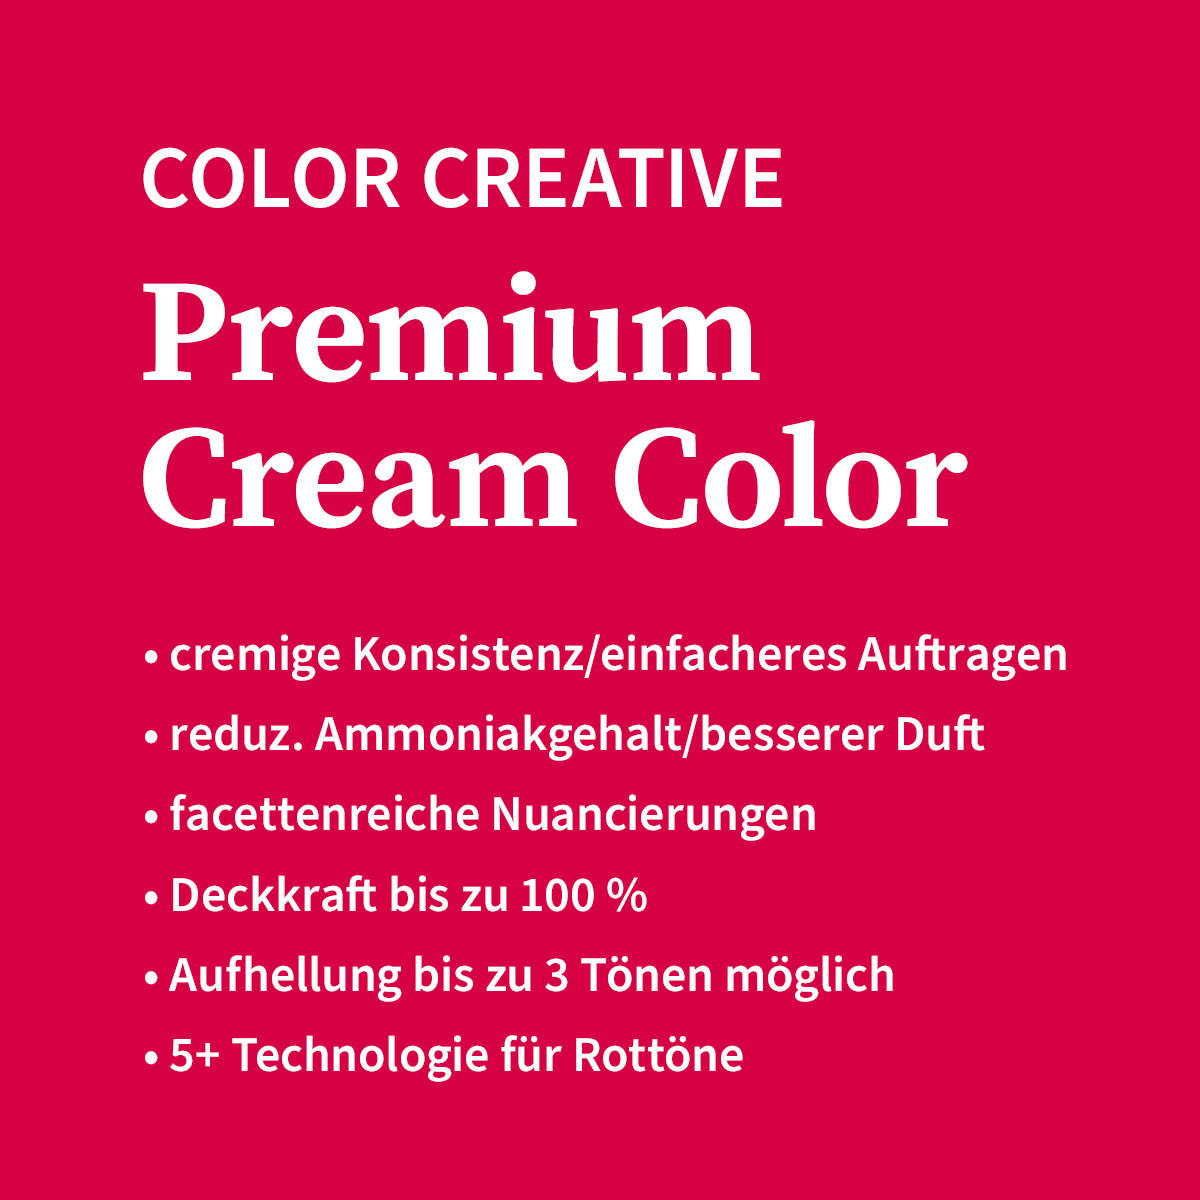 Basler Color Creative Premium Cream Color 6/74 rubio oscuro castaño - palisandro medio, tubo 60 ml - 4